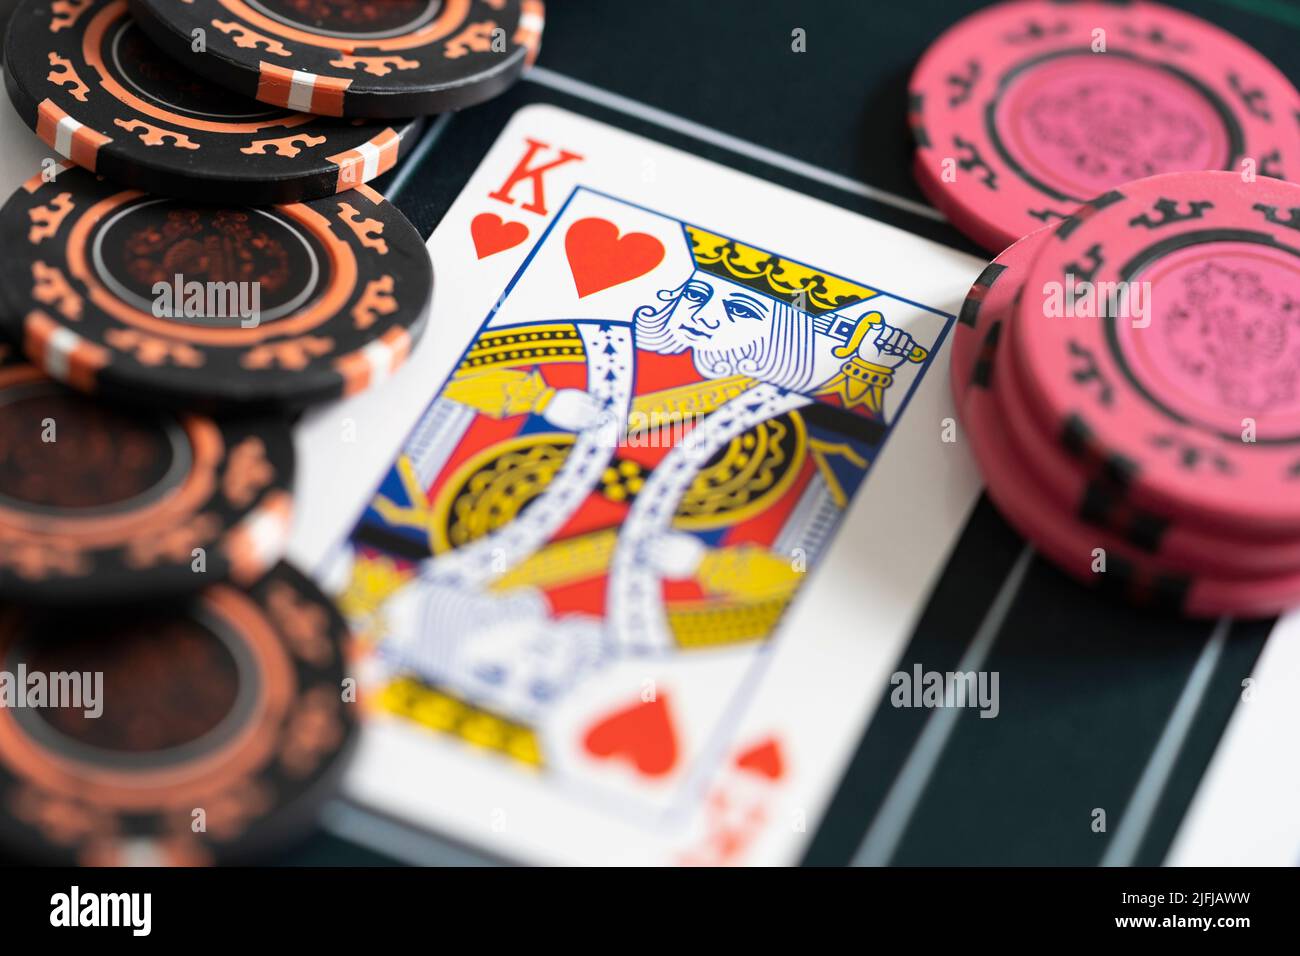 Primer plano de un rey de corazones jugando fichas de cartas y apuestas de póquer en una estera de póquer. Concepto - estrategia de poker, apuestas, adicción al juego Foto de stock